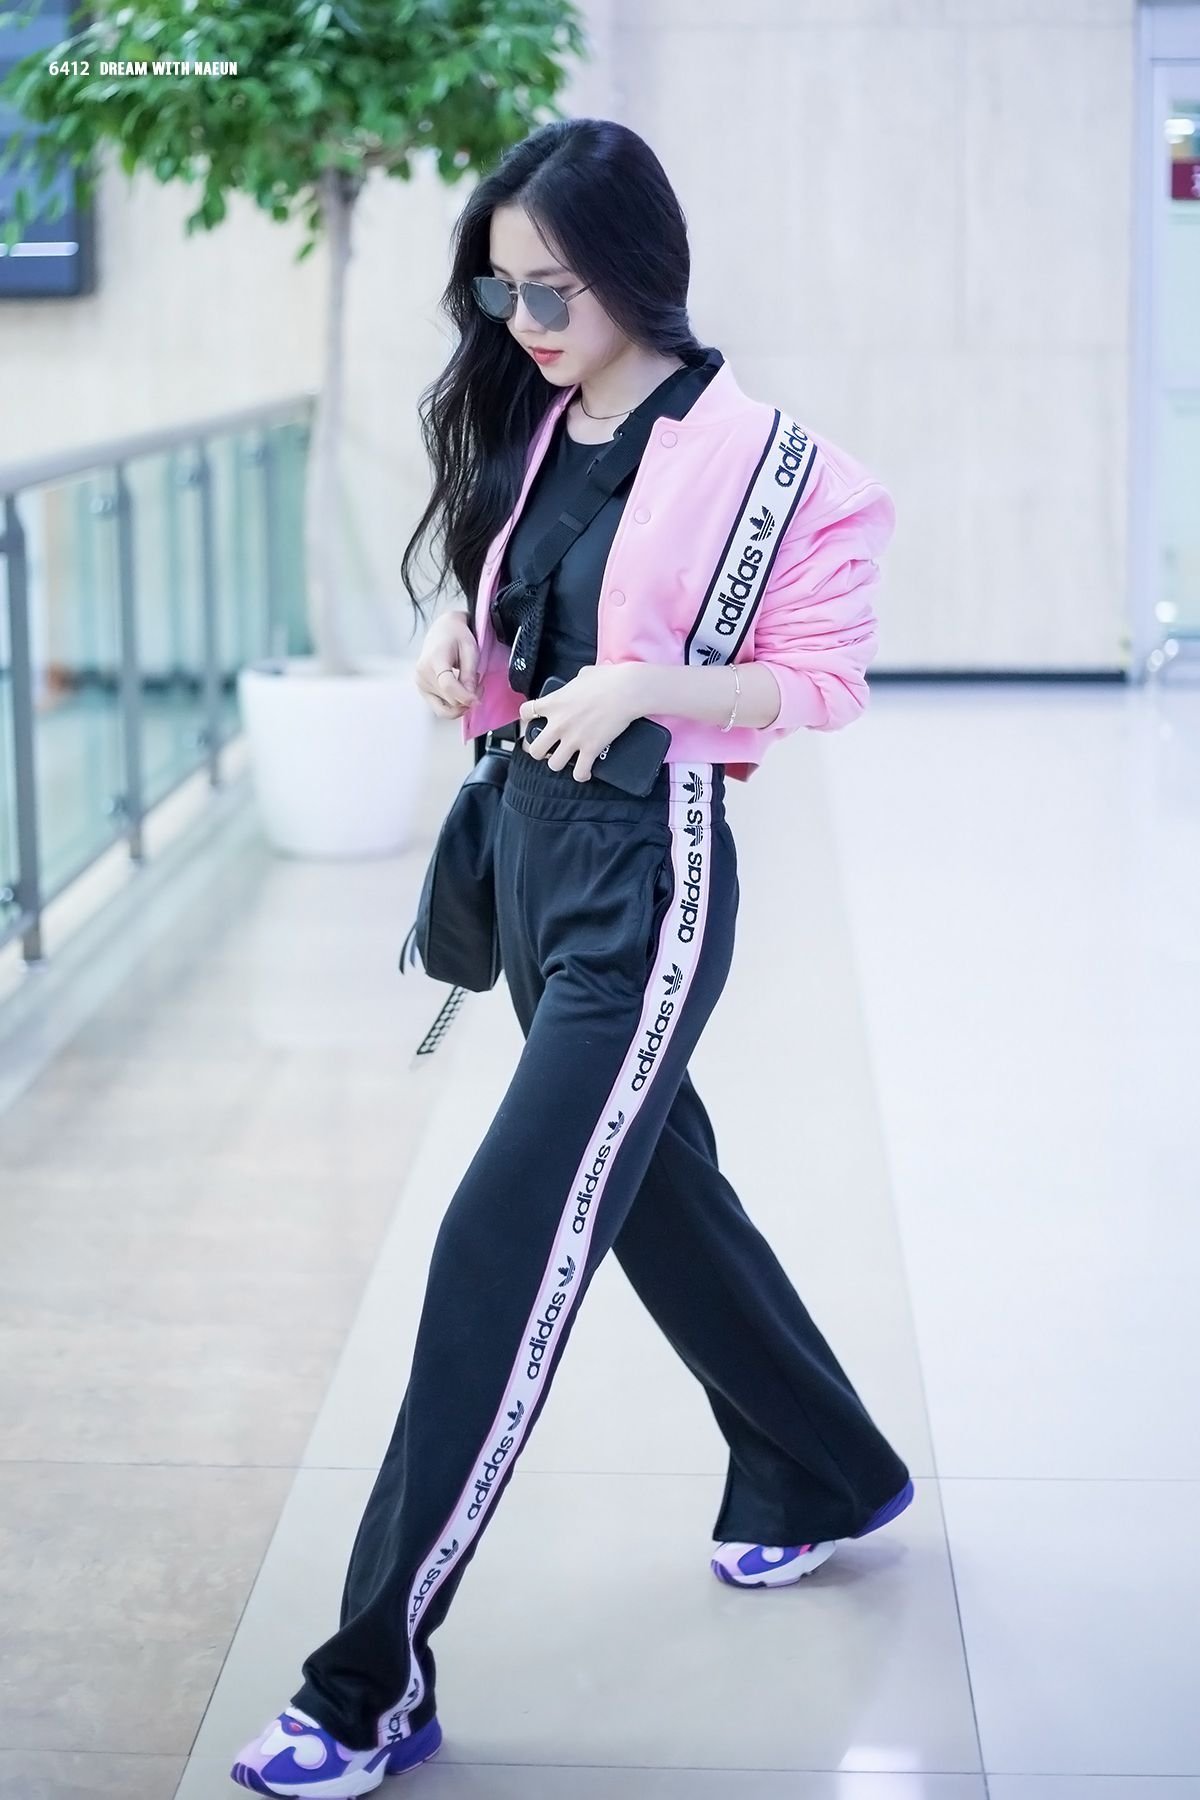 Корейские спортивные костюмы. Спортивный костюм Корея. Спортивный костюм Корея женский. Корейский спортивный костюм для девушек. Корейские спортивные костюмы женские